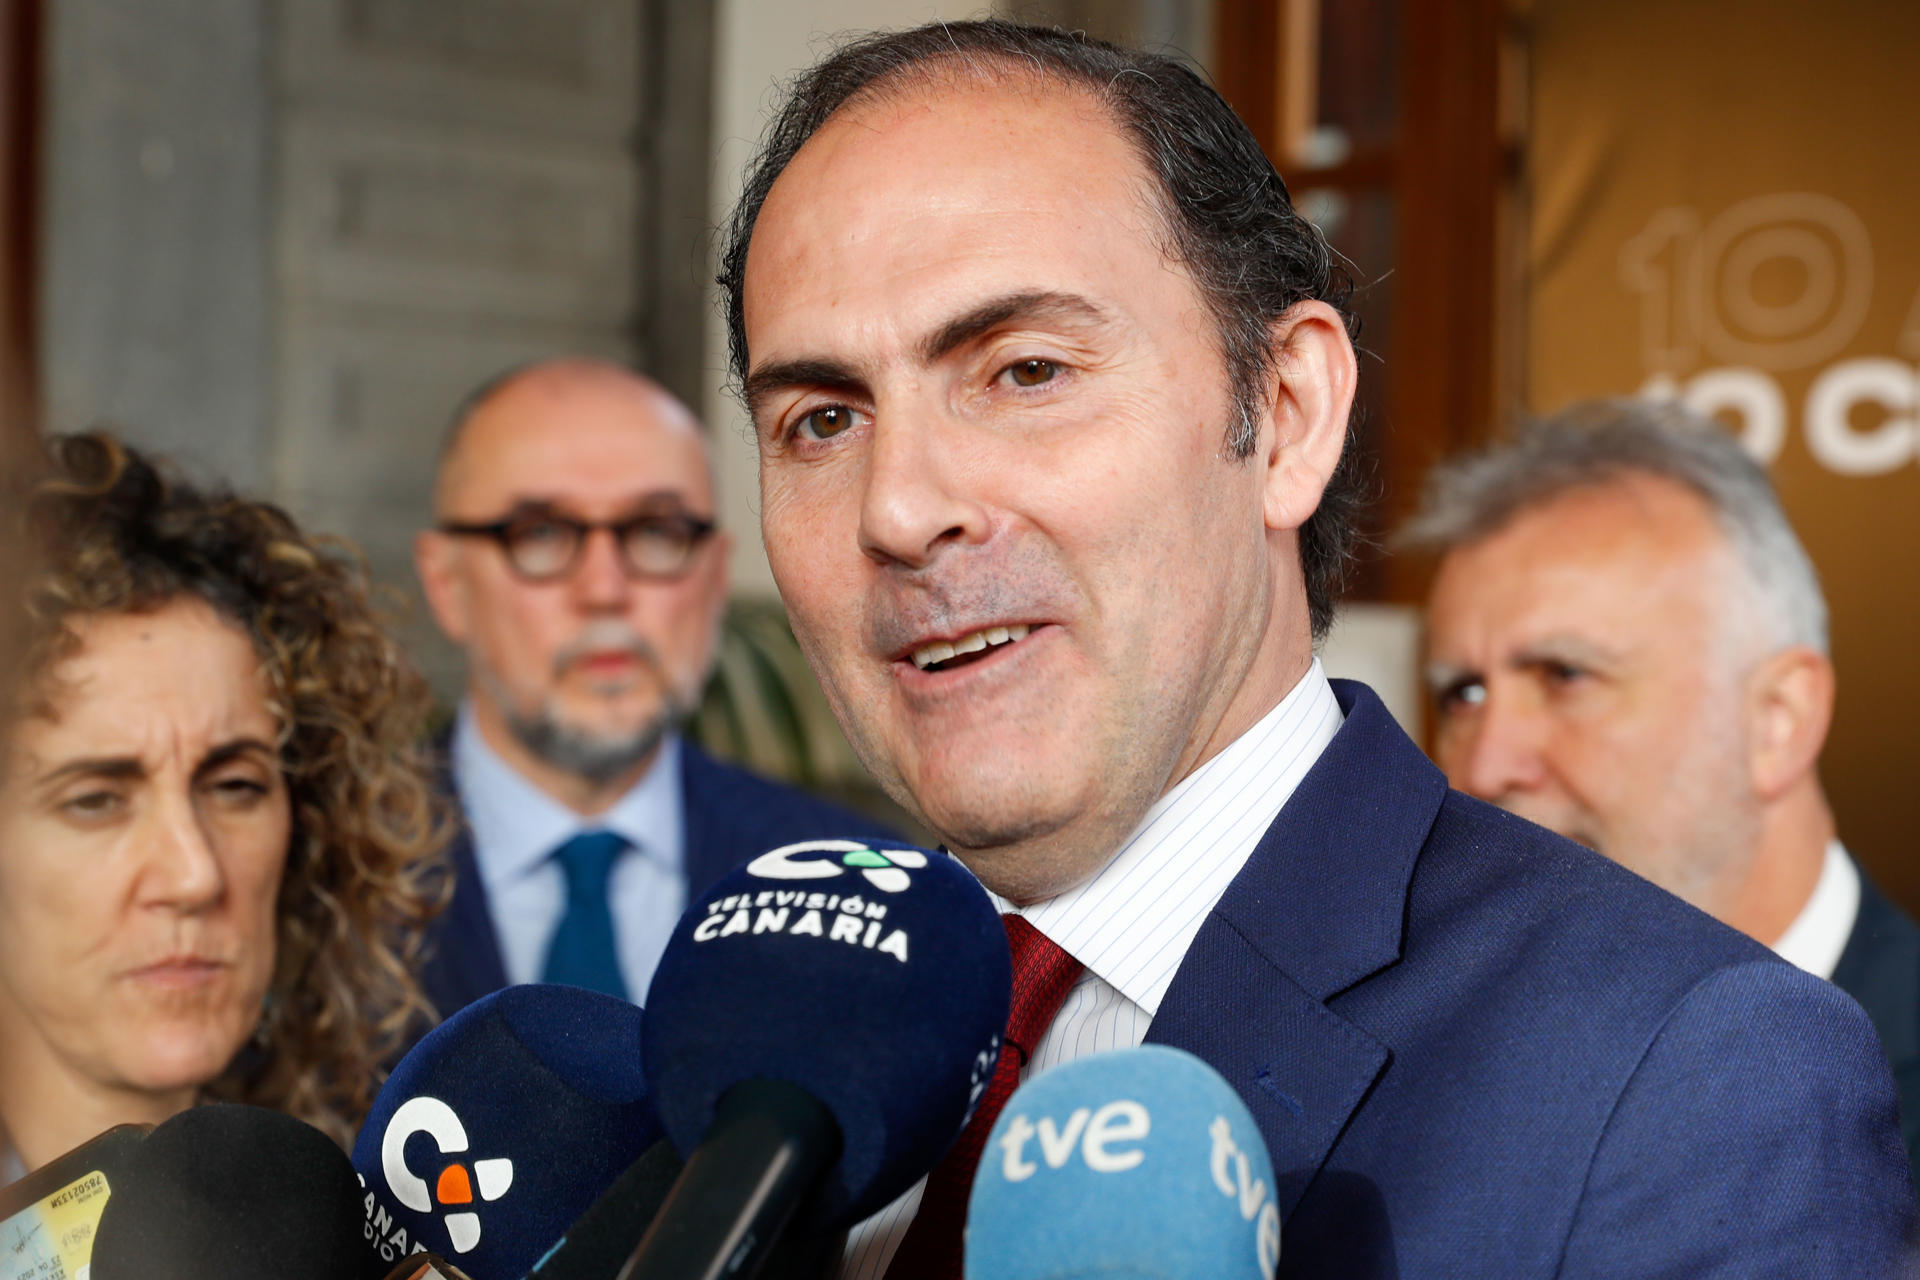 El presidente de Iberia, Javier Sánchez, atiende a los medios de comunicación tras reunirse este viernes con el presidente de Canarias, Ángel Víctor Torres (d).EFE/ Elvira Urquijo A.